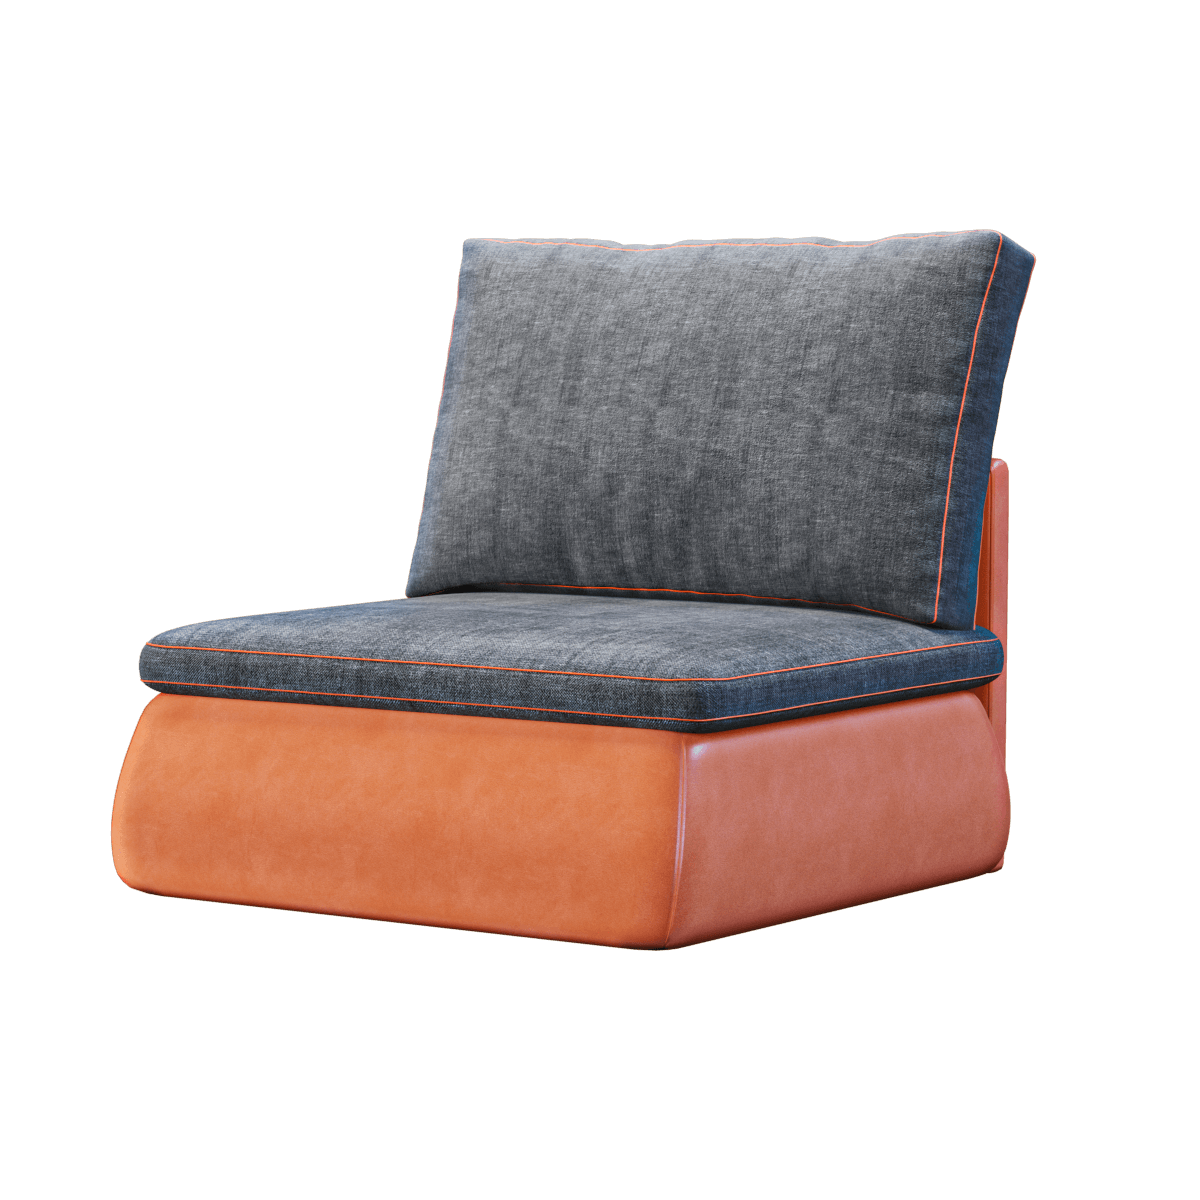 皮革和布艺双层材质无扶手单人沙发3D模型（OBJ,FBX,MAX）